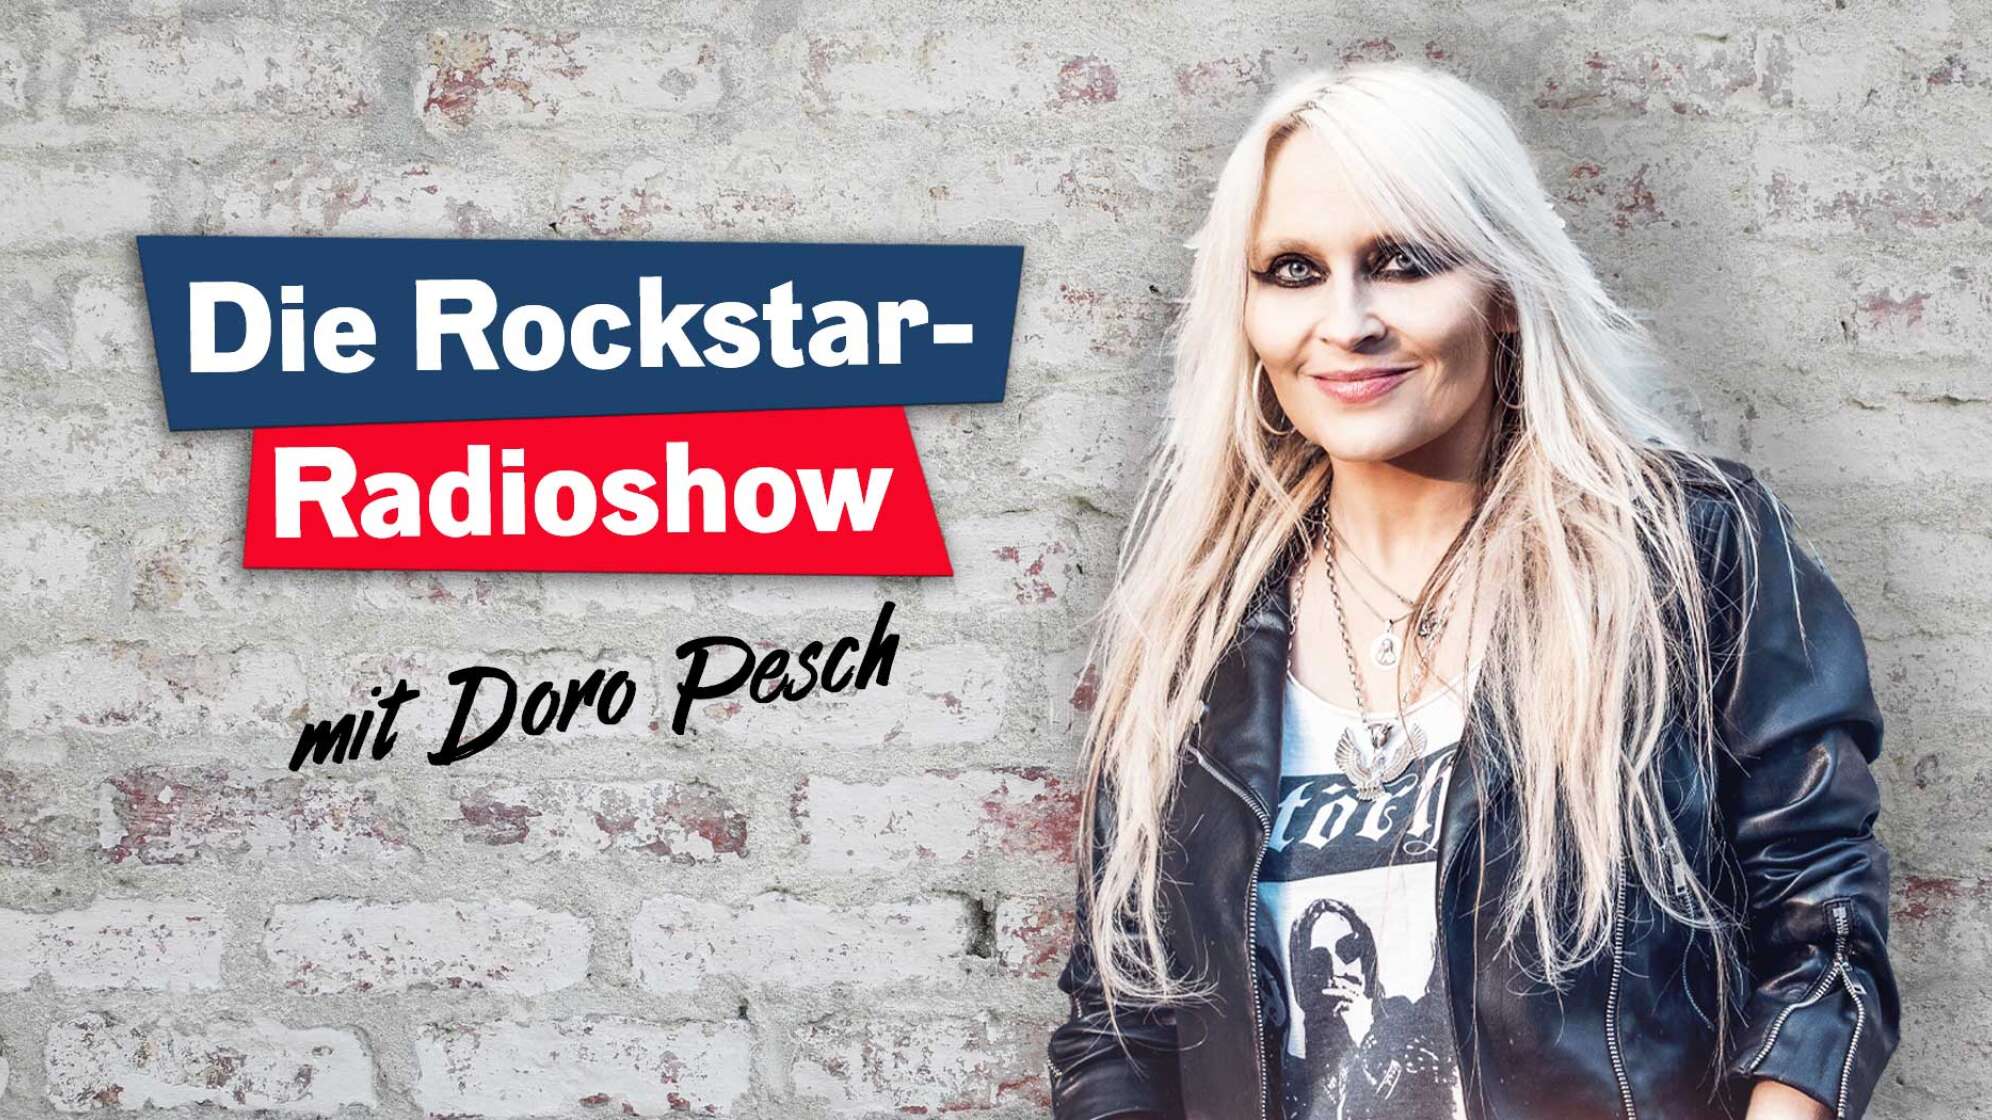 Die Rockstar-Radioshow mit Doro Pesch